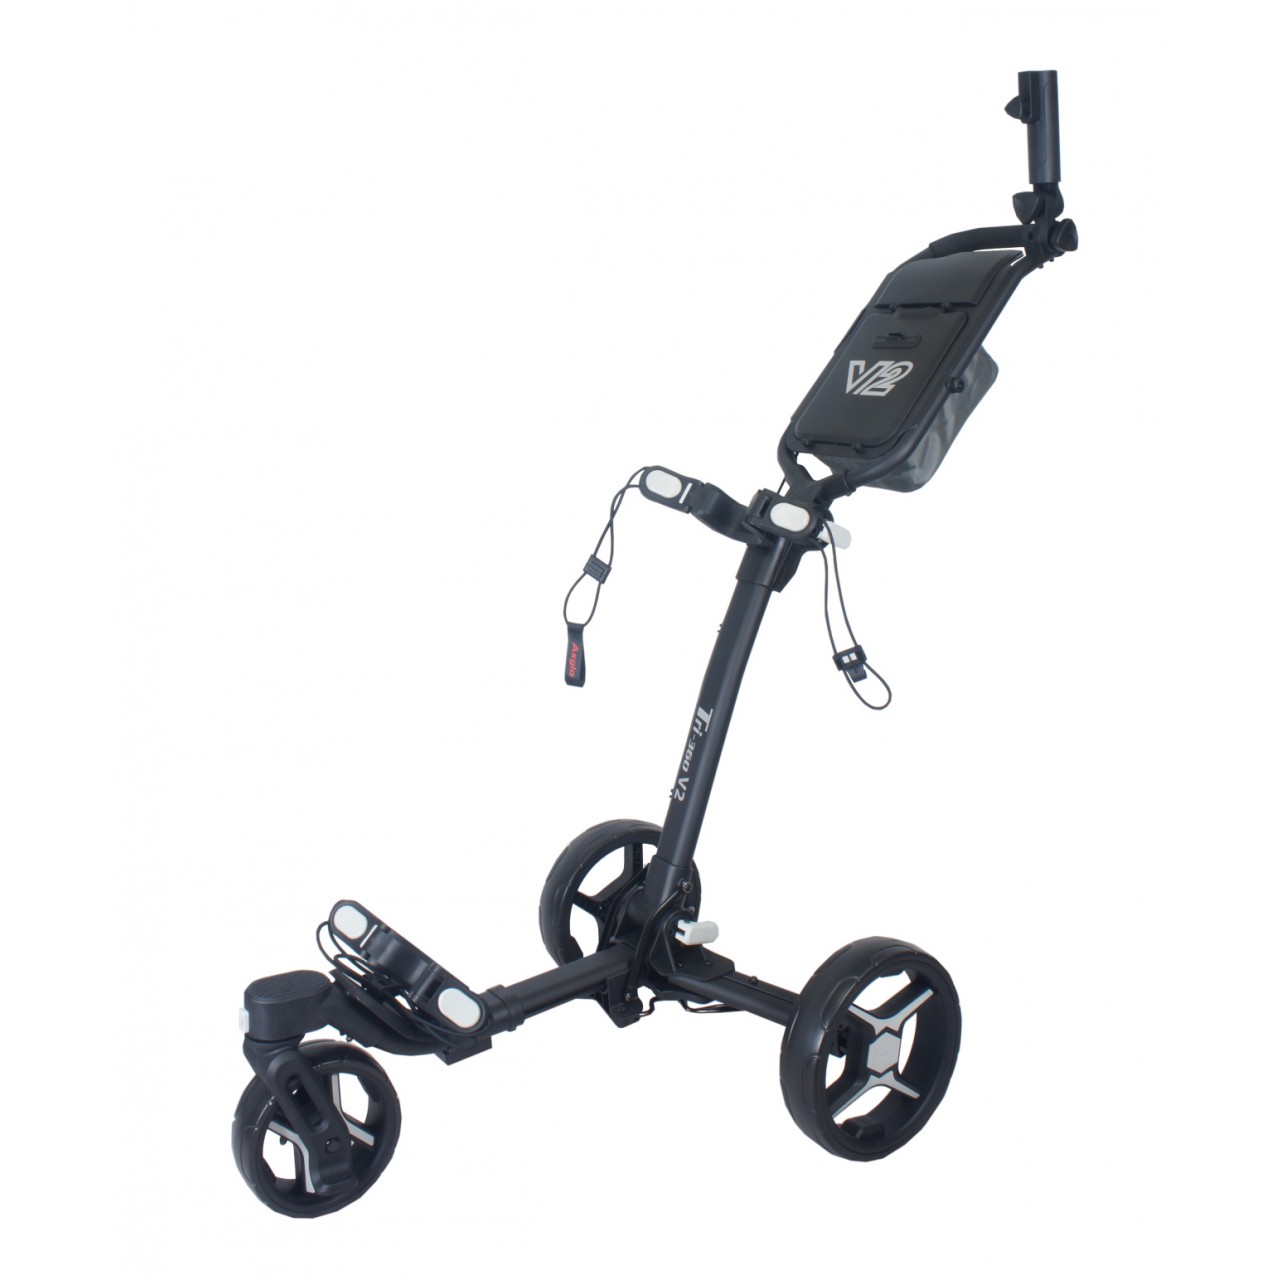 AXGLO Tri-360 V2 ruèní tøíkolový golfový vozík BLACK/GREY + ZDARMA obal na kola - zvìtšit obrázek